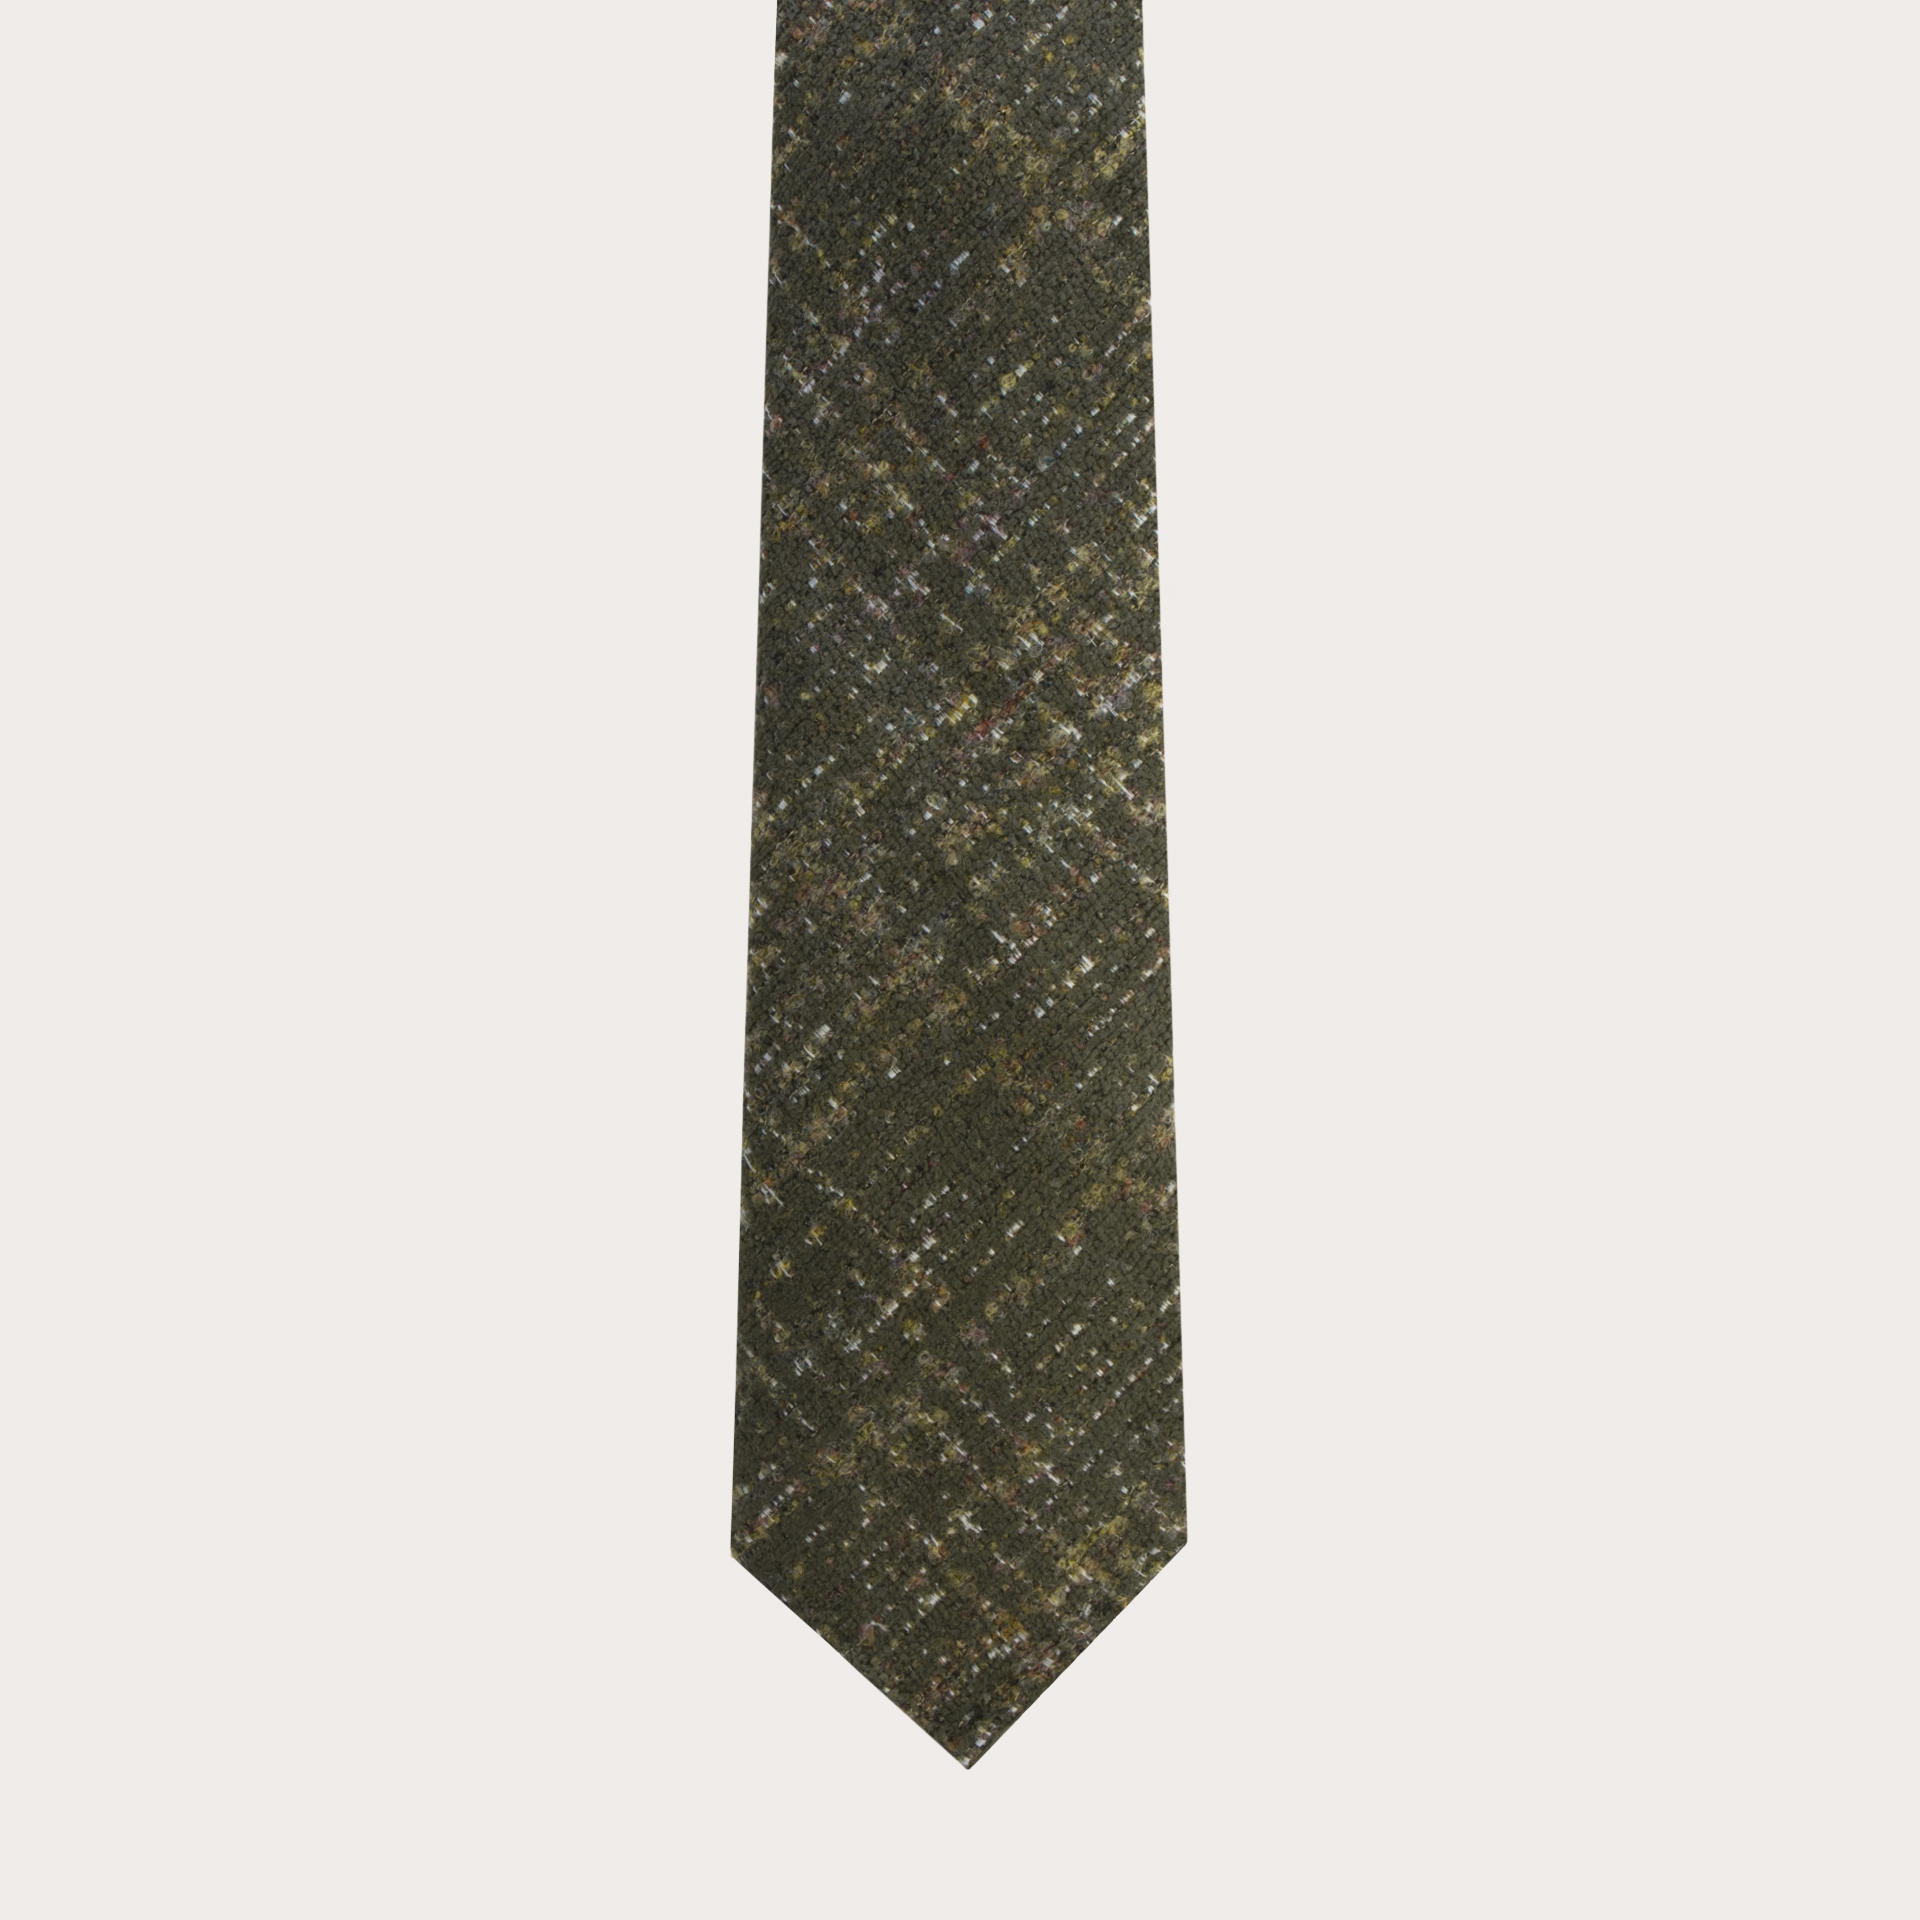 Cravatta sfoderata in lana e seta tartan verde